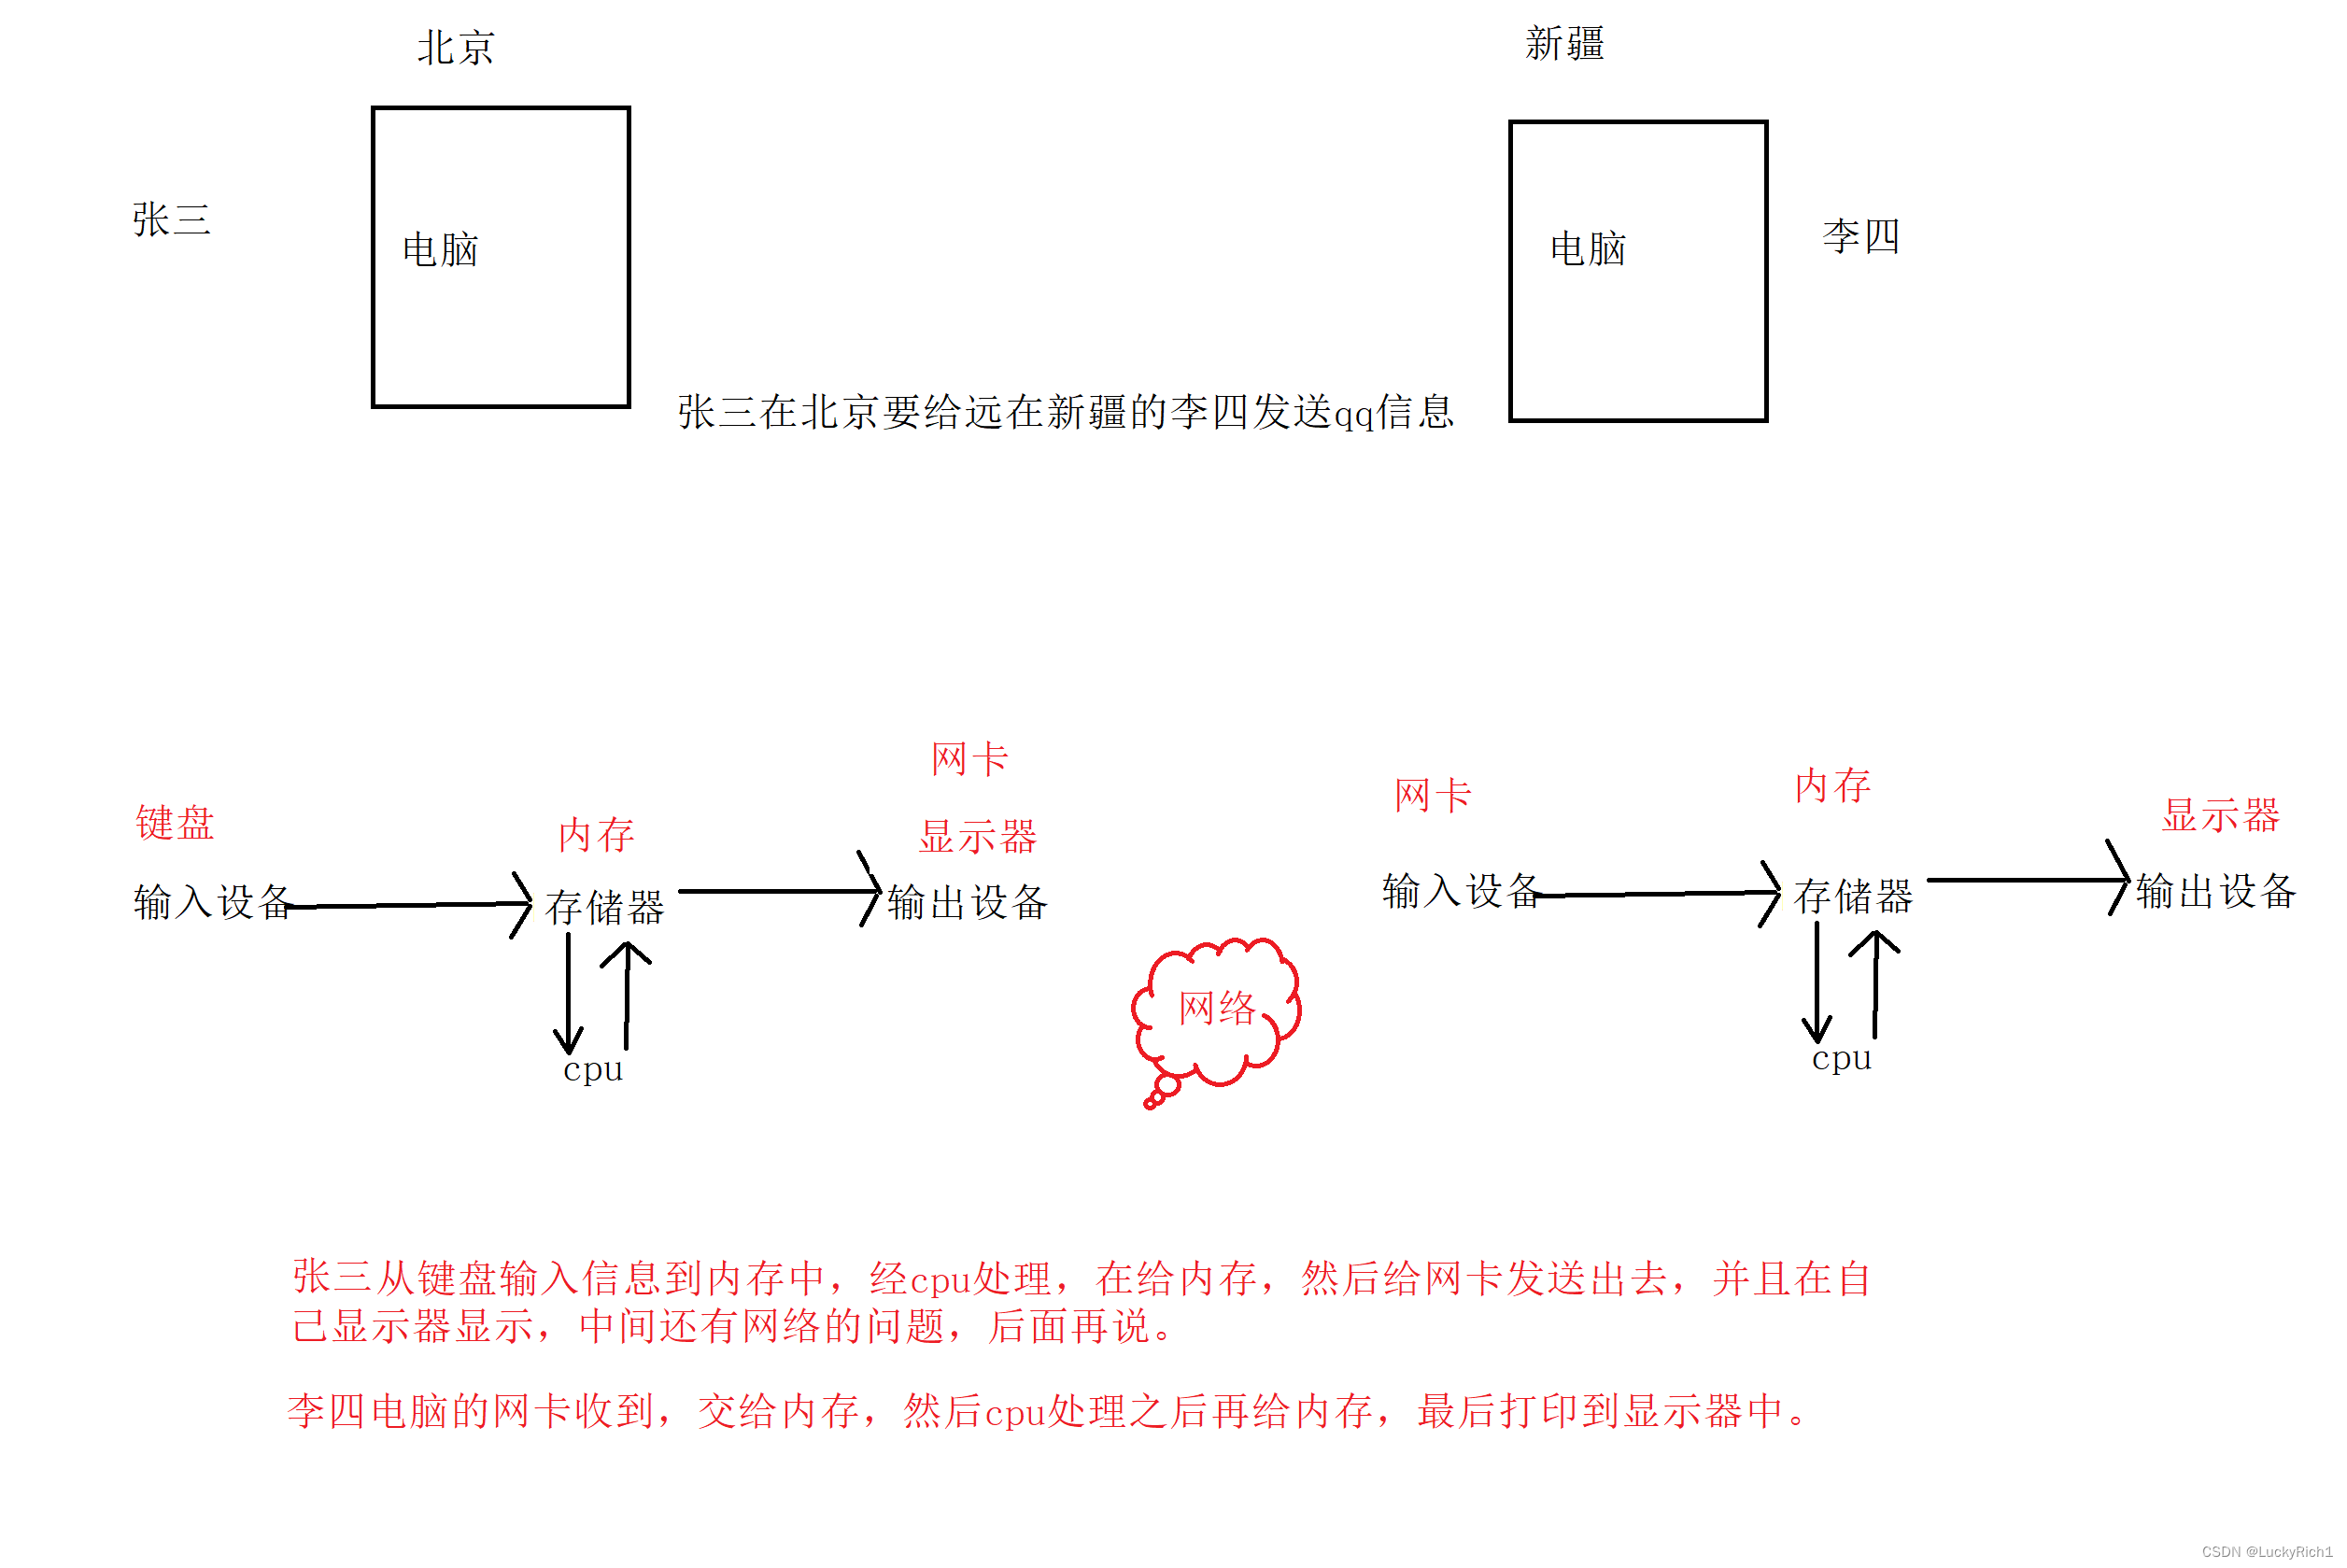 【Liunx】冯诺伊曼体系结构